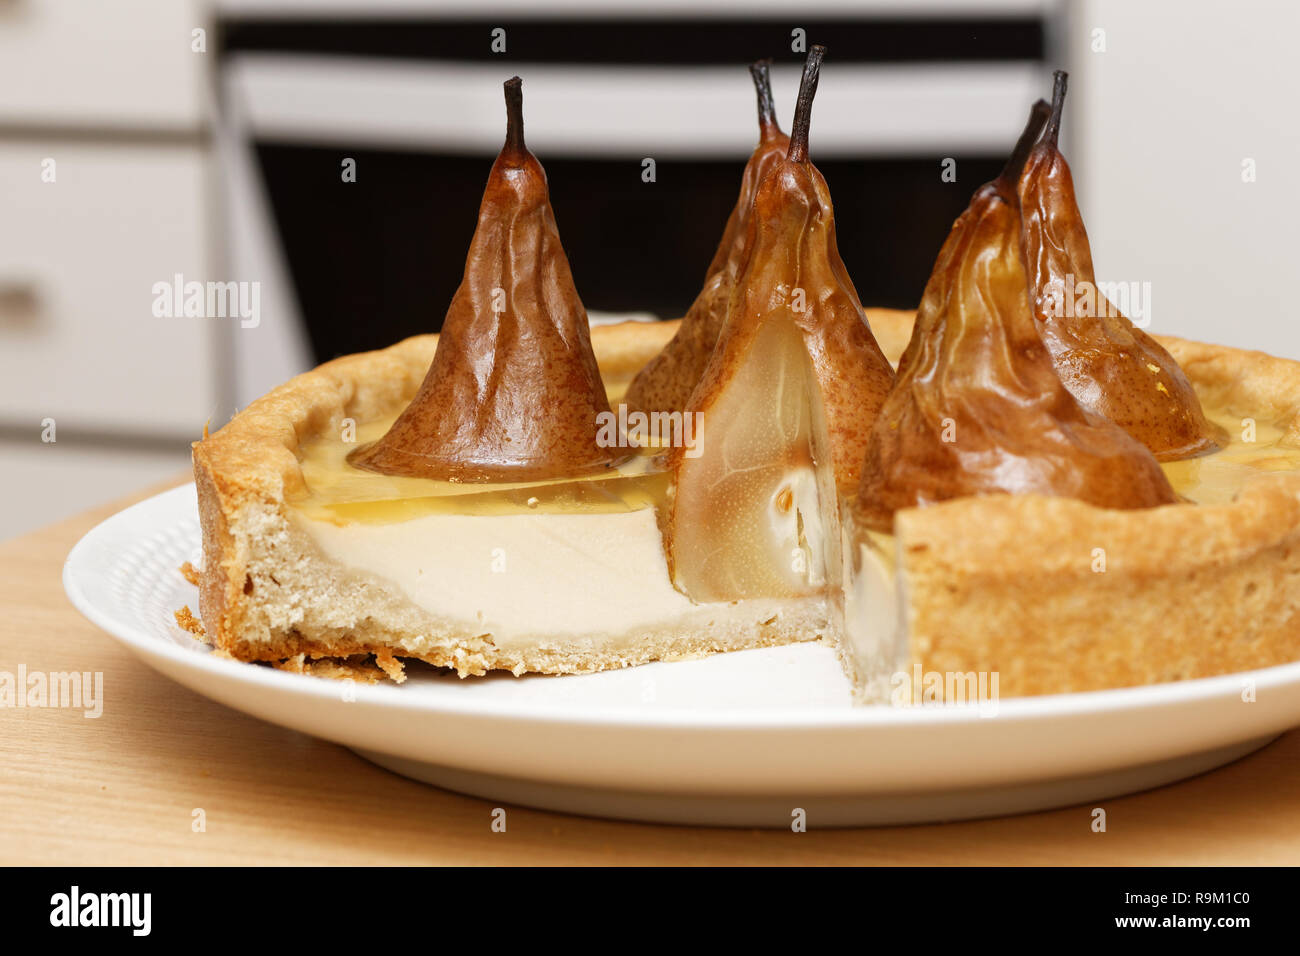 Pear-Kuchen mit Sahne Butter und Marmelade mit abgeschnitten Stücke auf hölzernen Tisch gegen verwackelte Küche Hintergrund Stockfoto